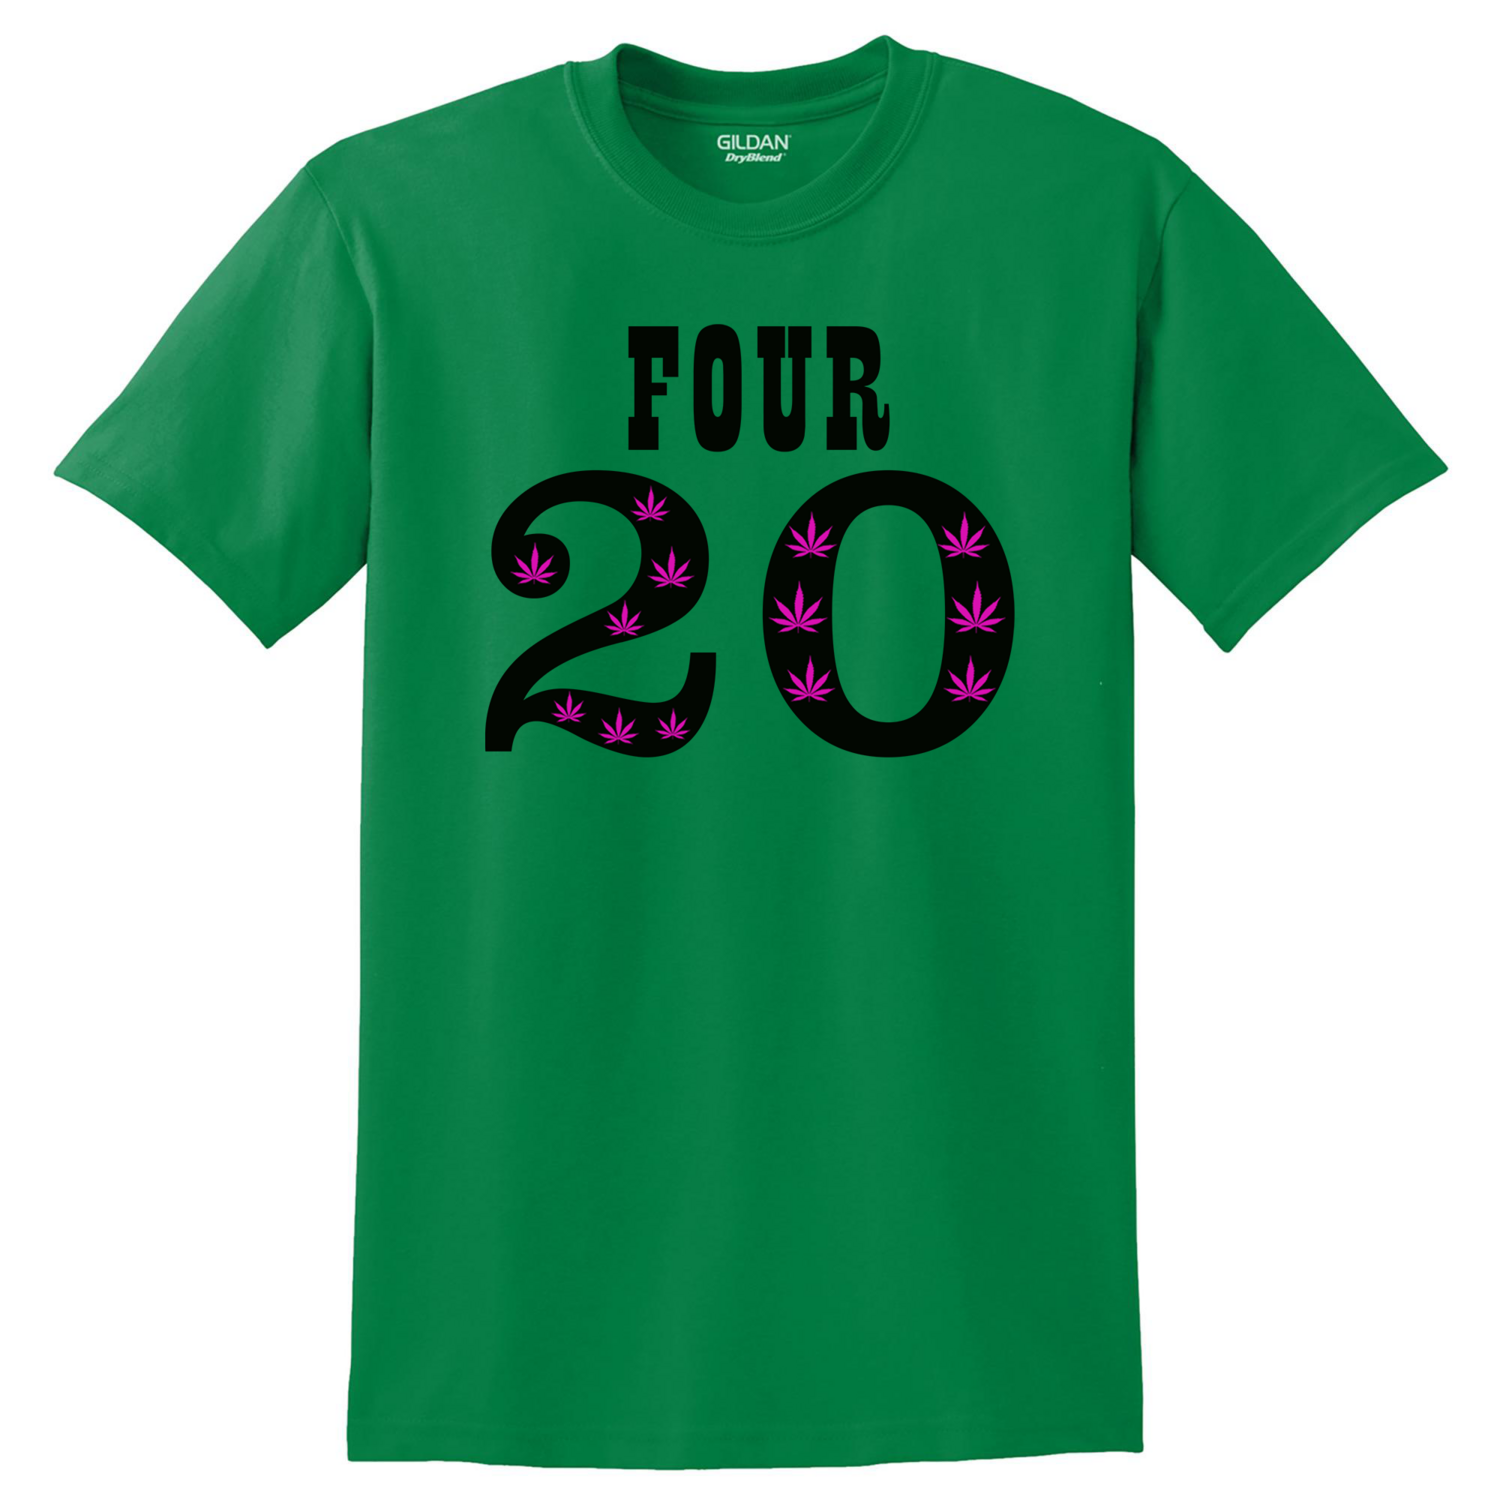 Four 20 Green Shirt